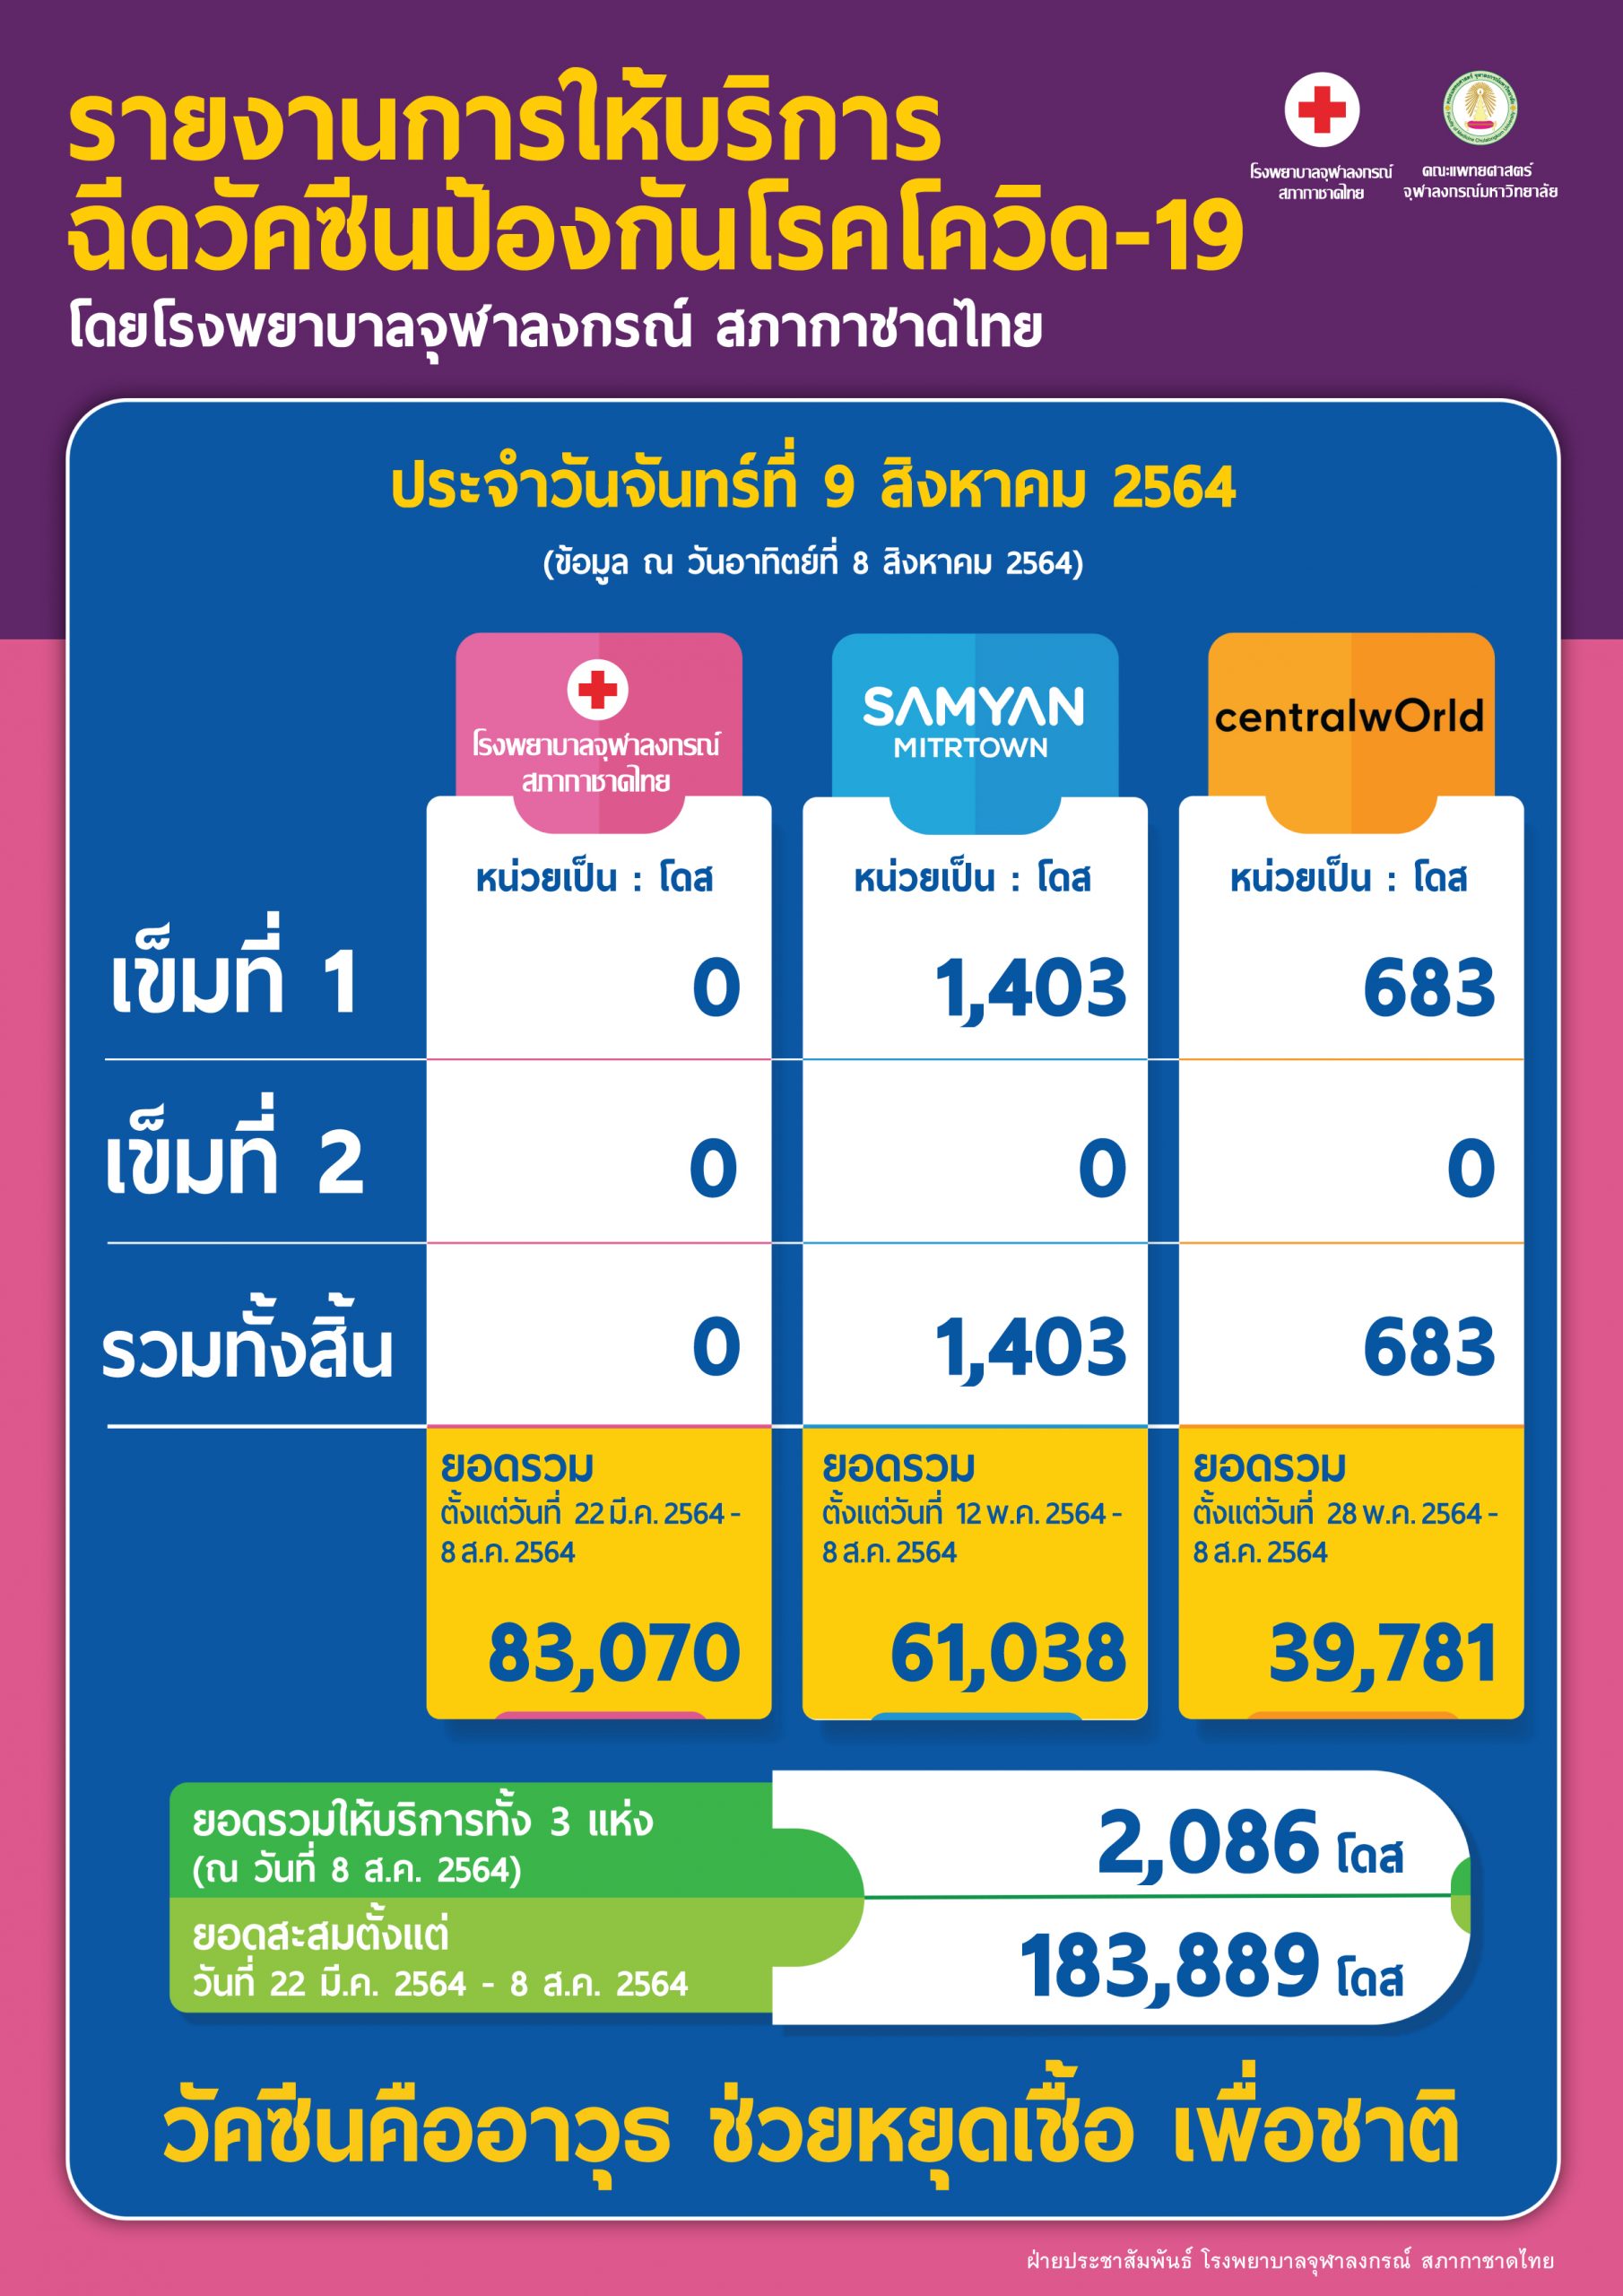 รายงานการให้บริการฉีดวัคซีนป้องกันโรคโควิด-19 โดยโรงพยาบาลจุฬาลงกรณ์ สภากาชาดไทย ประจำวันจันทร์ที่ 9 สิงหาคม 2564